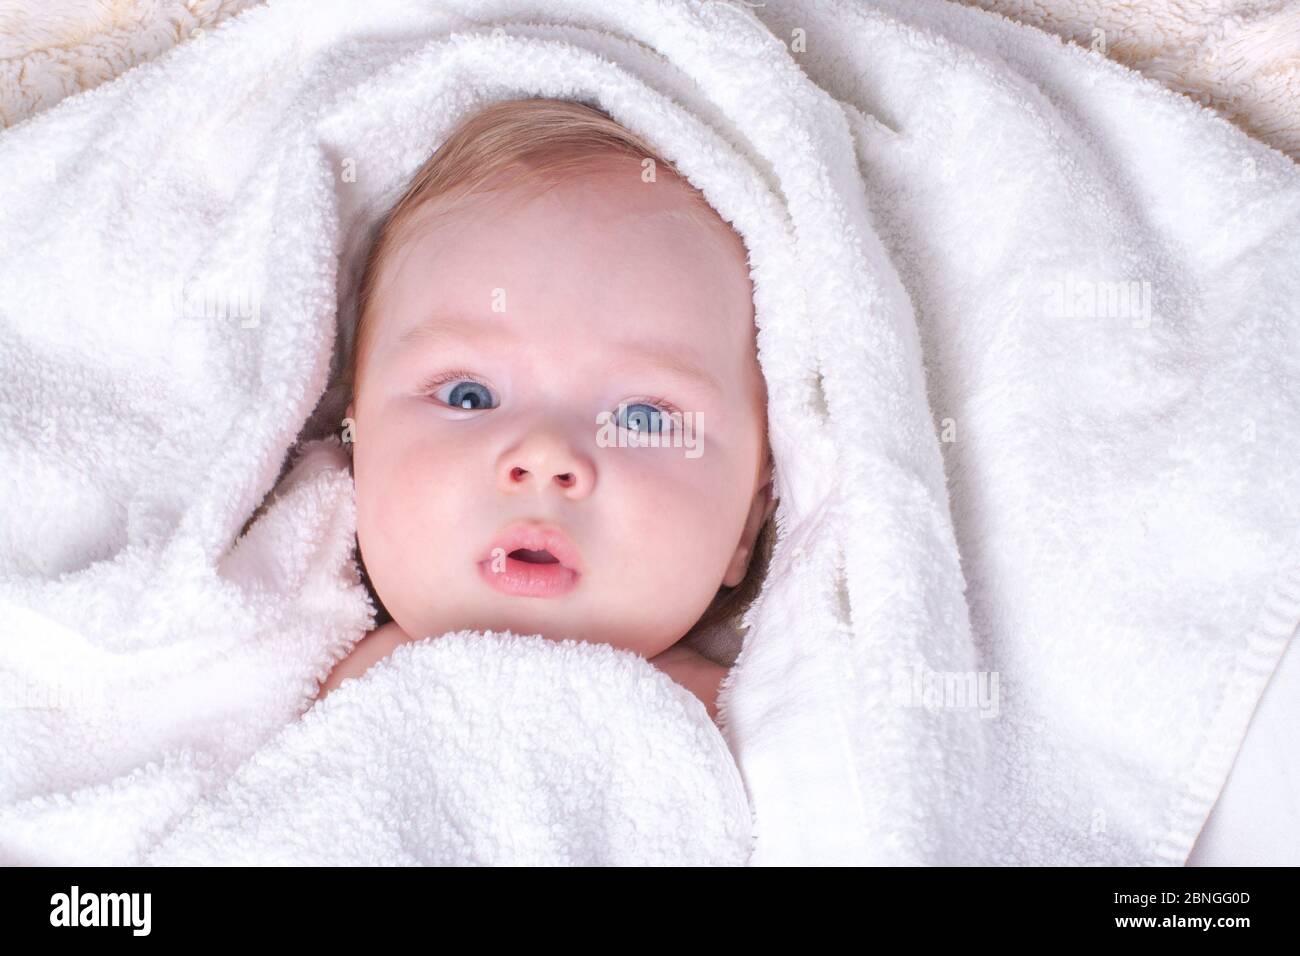 Charmant, surpris, bleu-eyed bébé avec des lèvres et des cheveux blonds se  trouve dans une serviette sèche, blanche après avoir baigné dans la salle  de bains. Concept de soins de la peau,